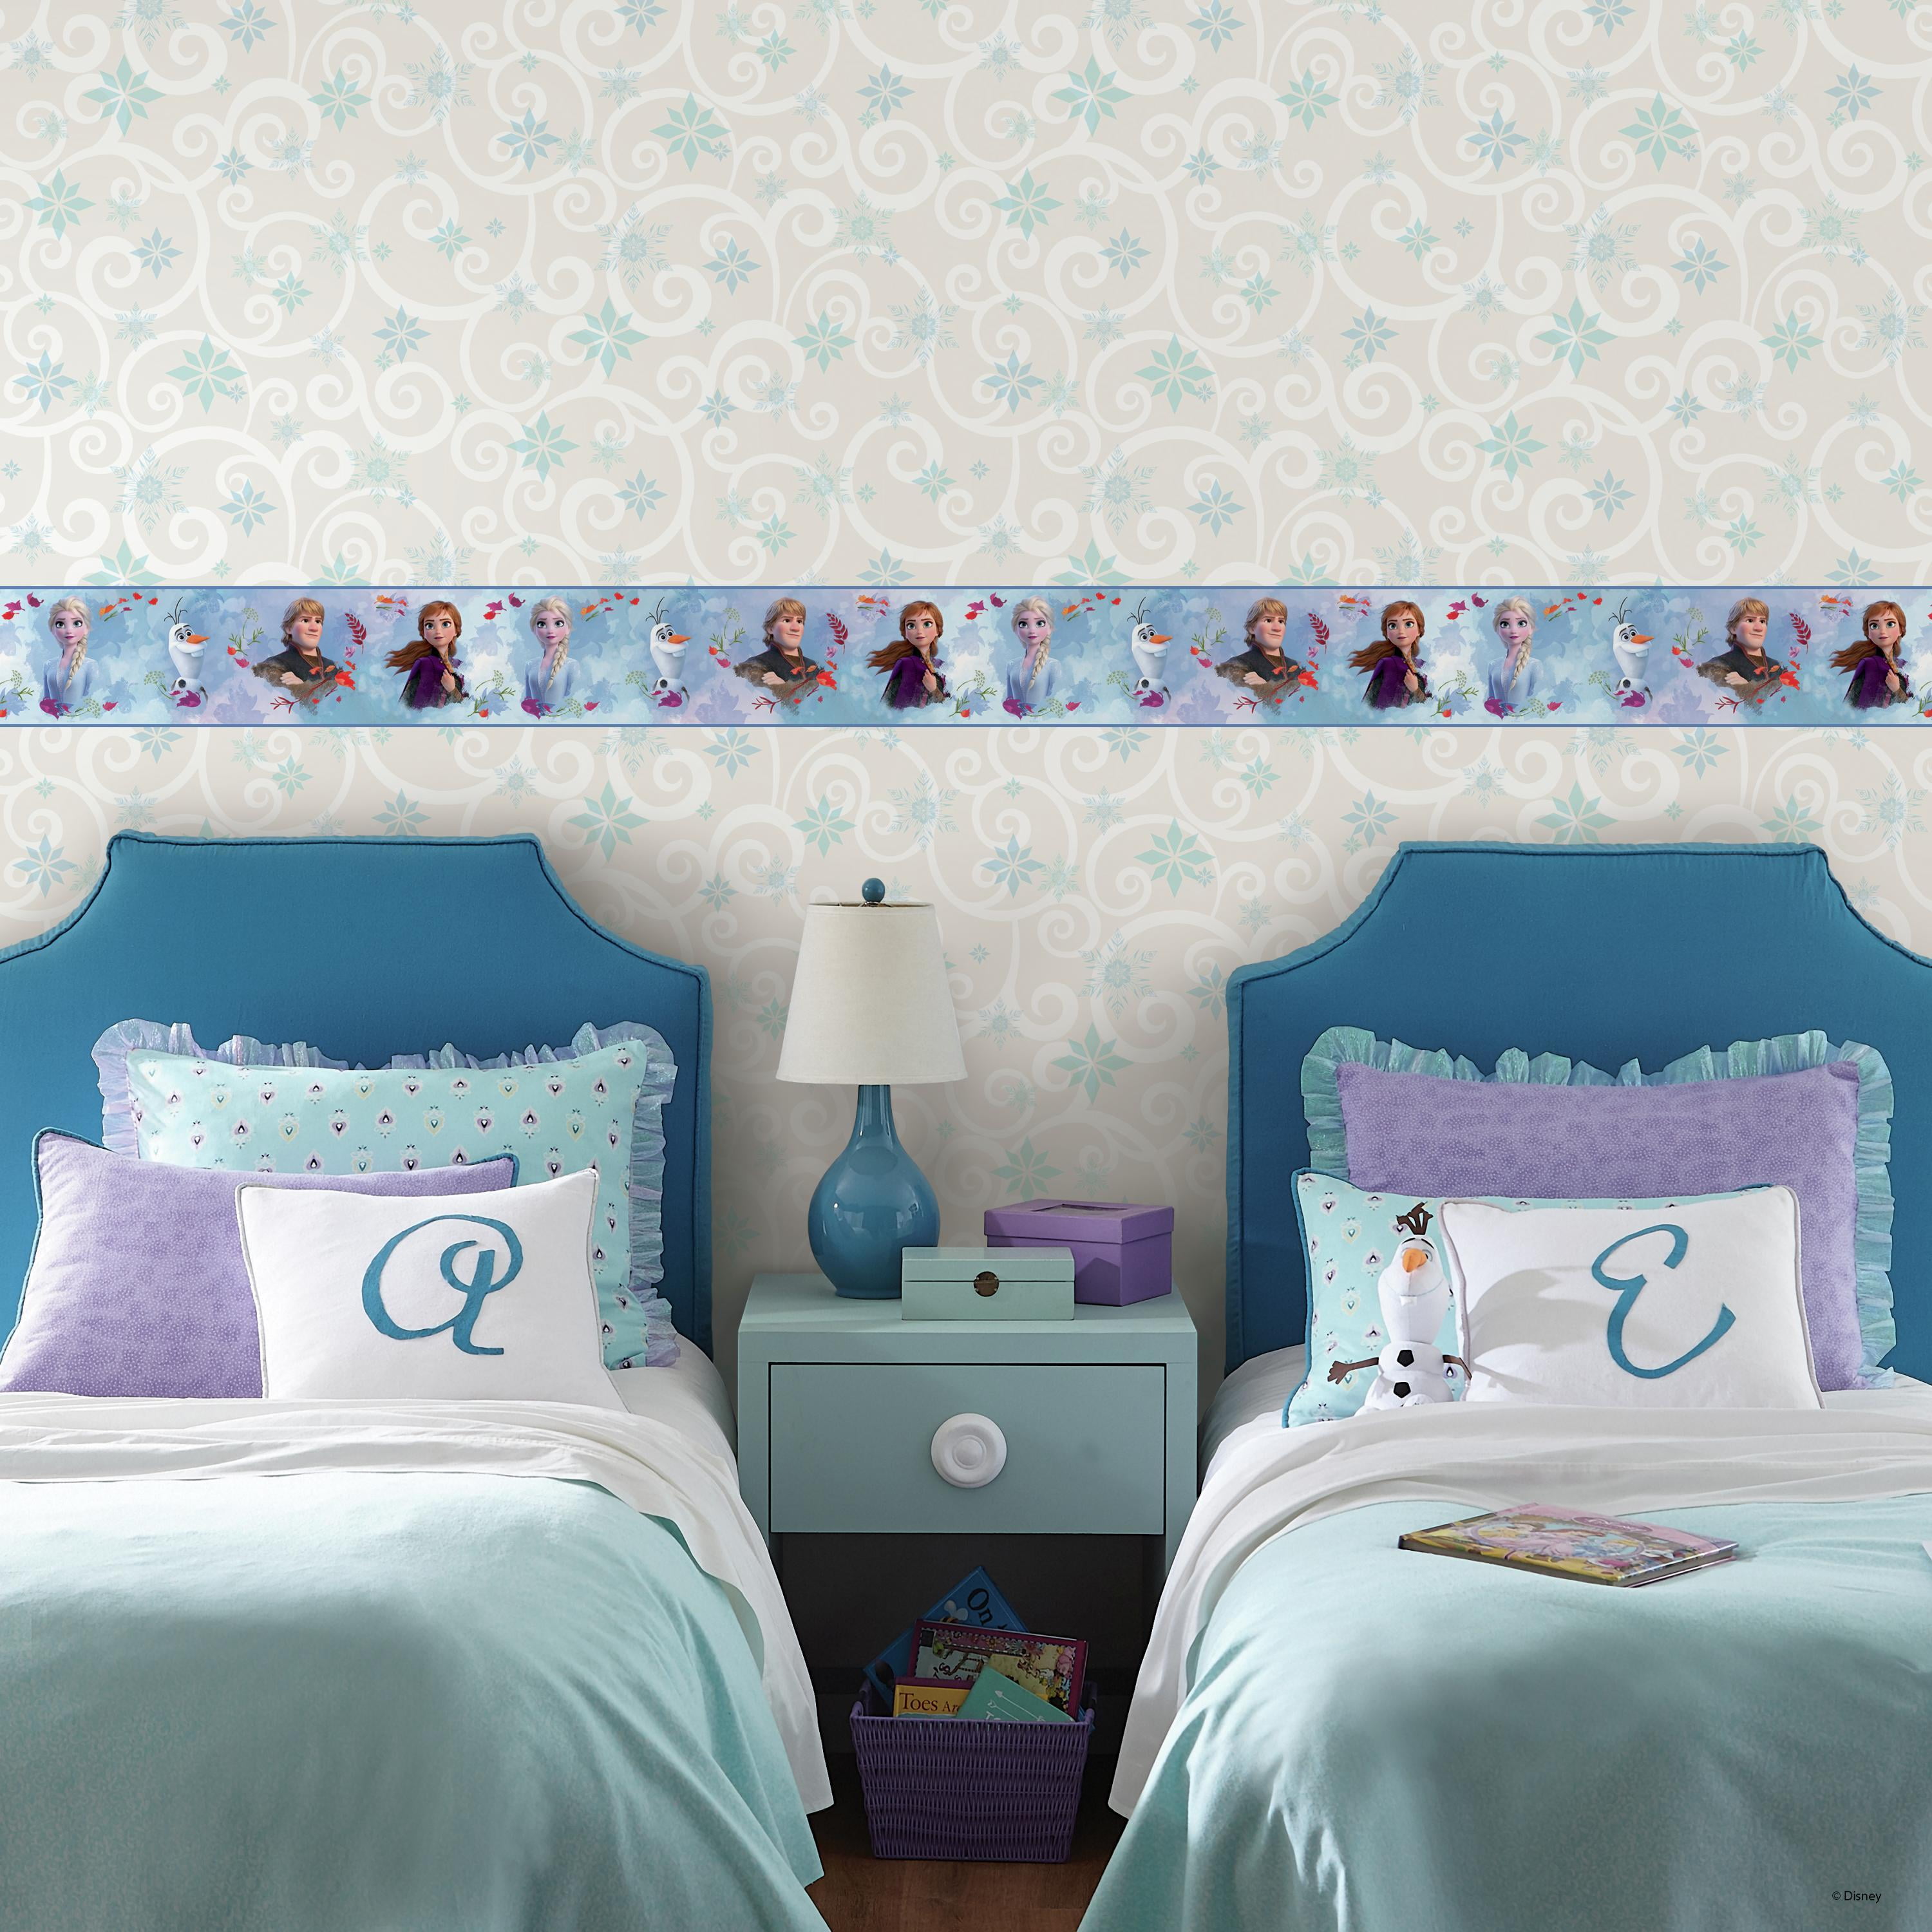 New Disney Frozen Snow Queen ELSA Wallpaper Border Self Adhesive Kids Bedroom 20